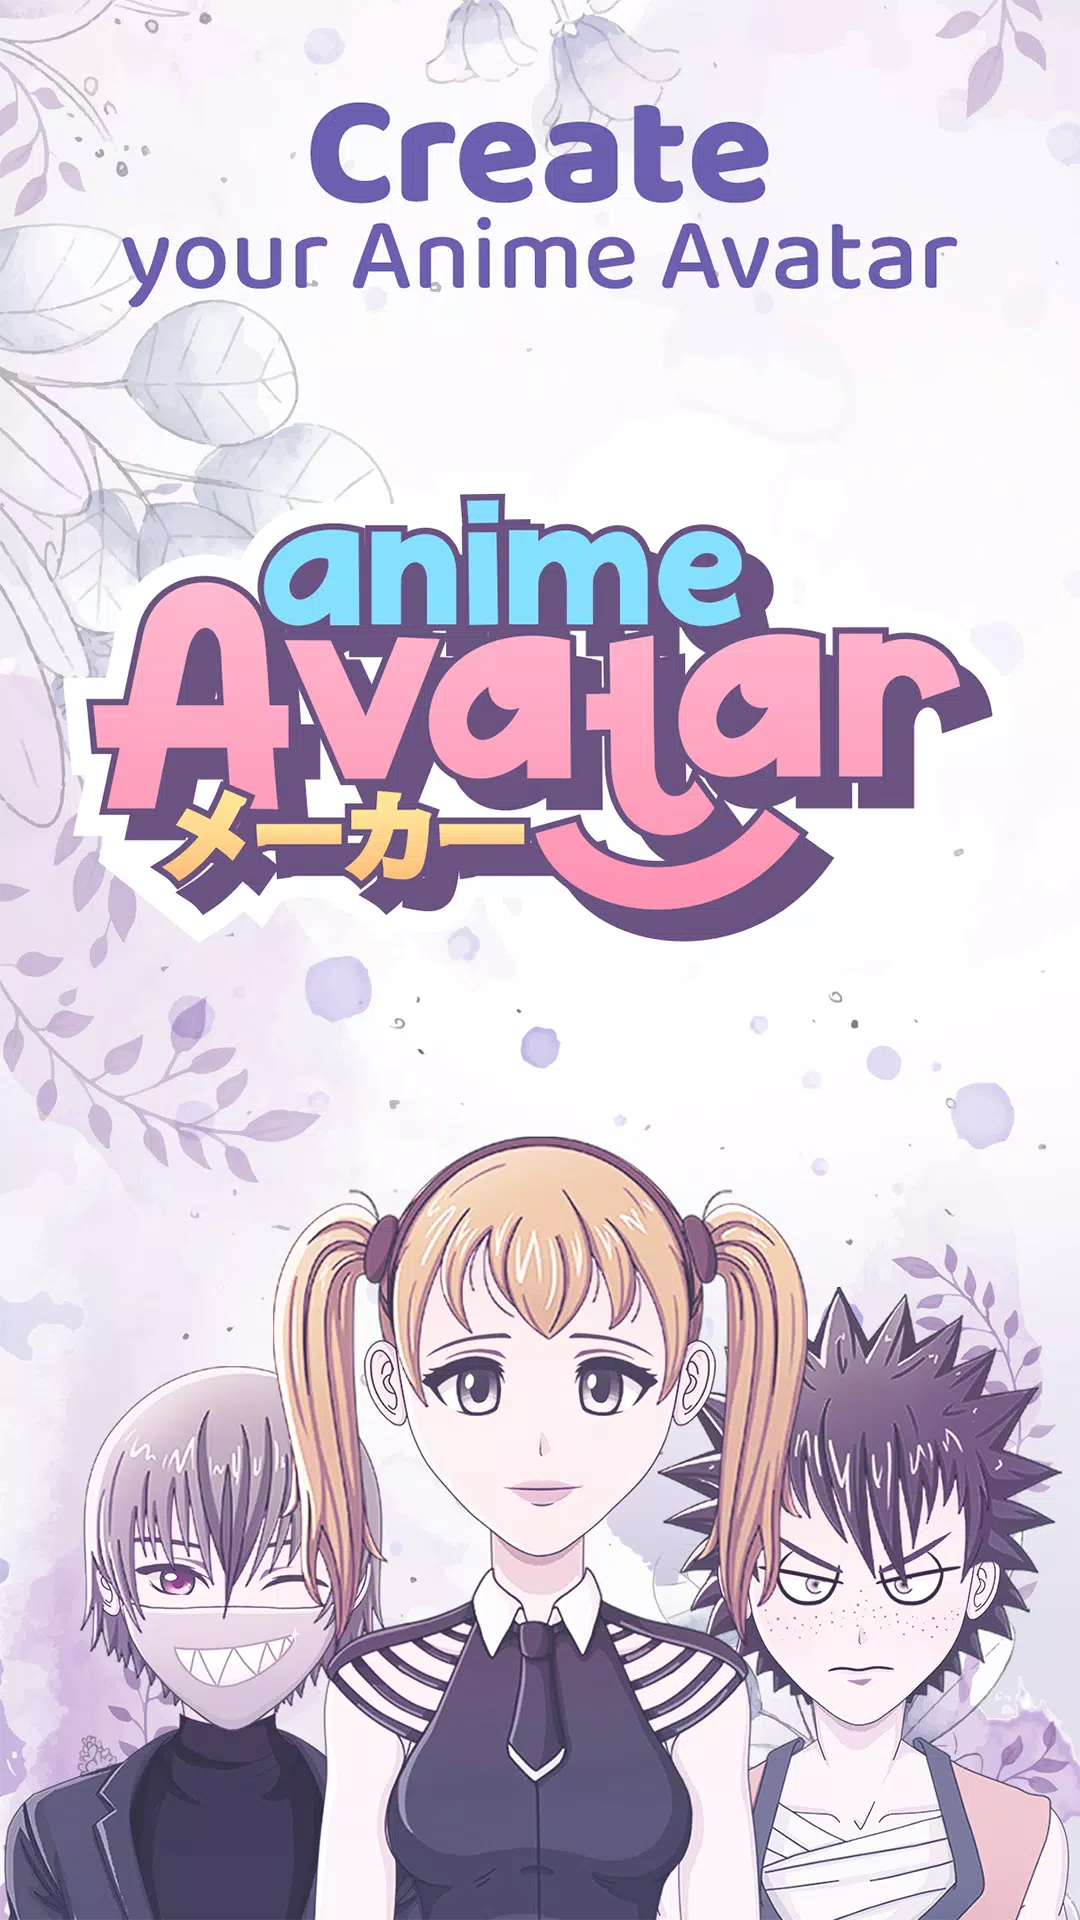 Avatar anime động cho Android từ ảnh: Hãy truy cập vào ứng dụng Avatar Anime động cho Android từ ảnh để tạo ra những bức ảnh động được thực hiện bằng công nghệ mới nhất. Với độ ổn định cao và tính năng đa dạng, bạn sẽ chắc chắn sẽ không phải cảm thấy nhàm chán khi sử dụng ứng dụng này.